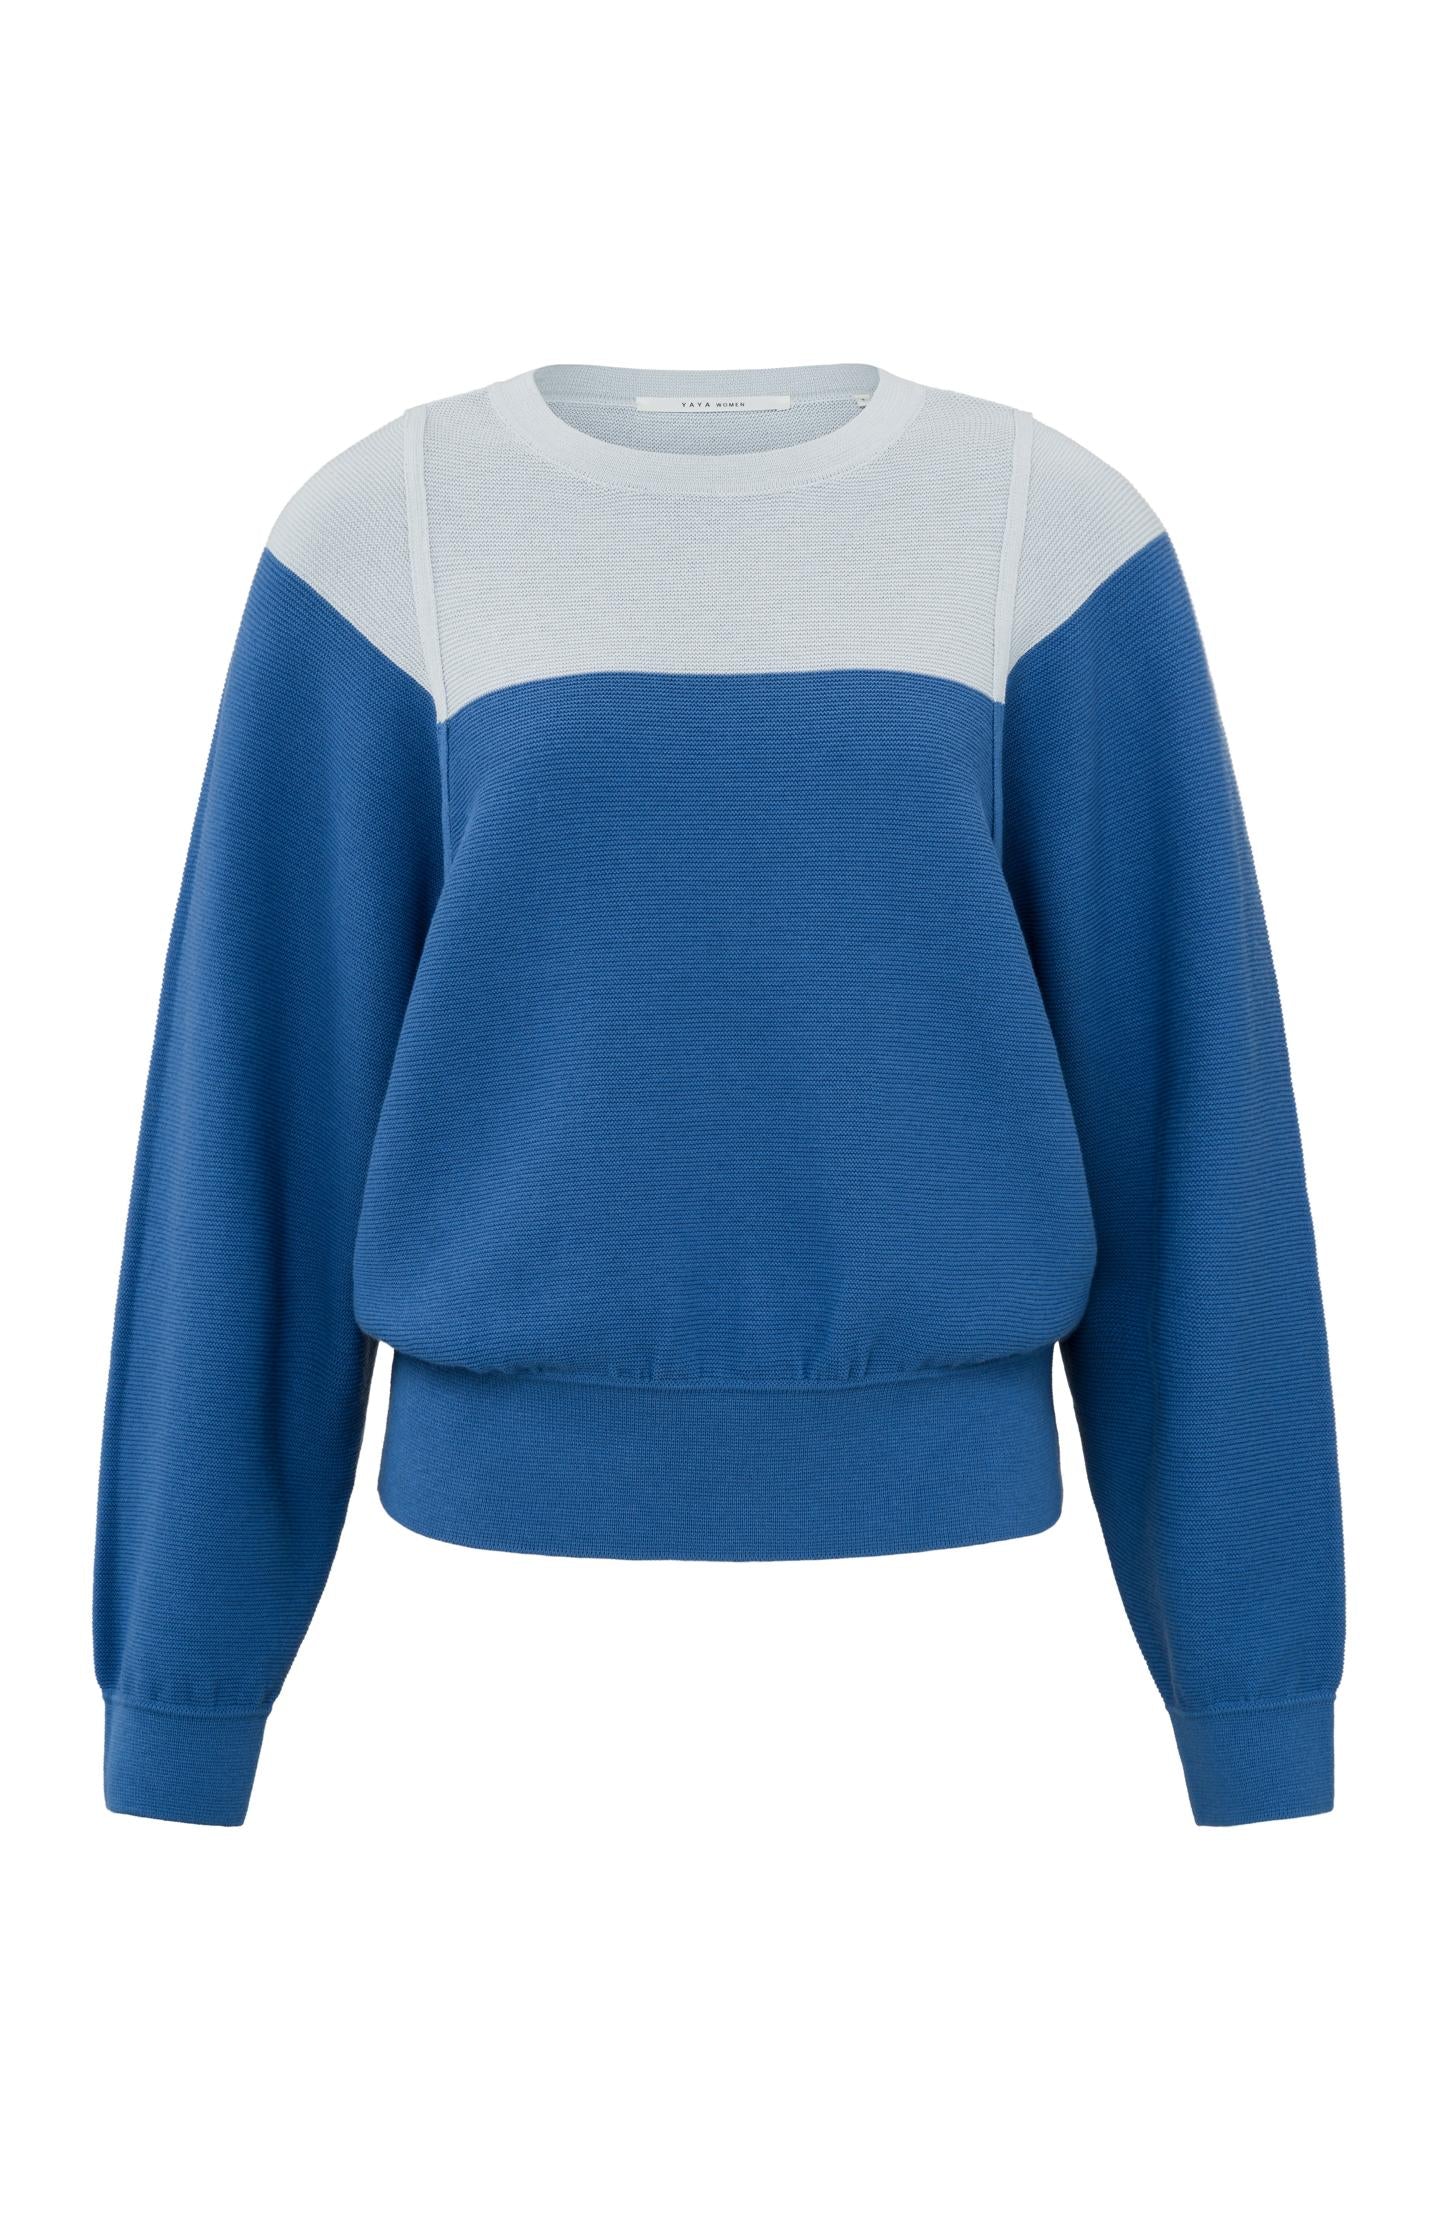 Cobalt Stitch Detail Sweater